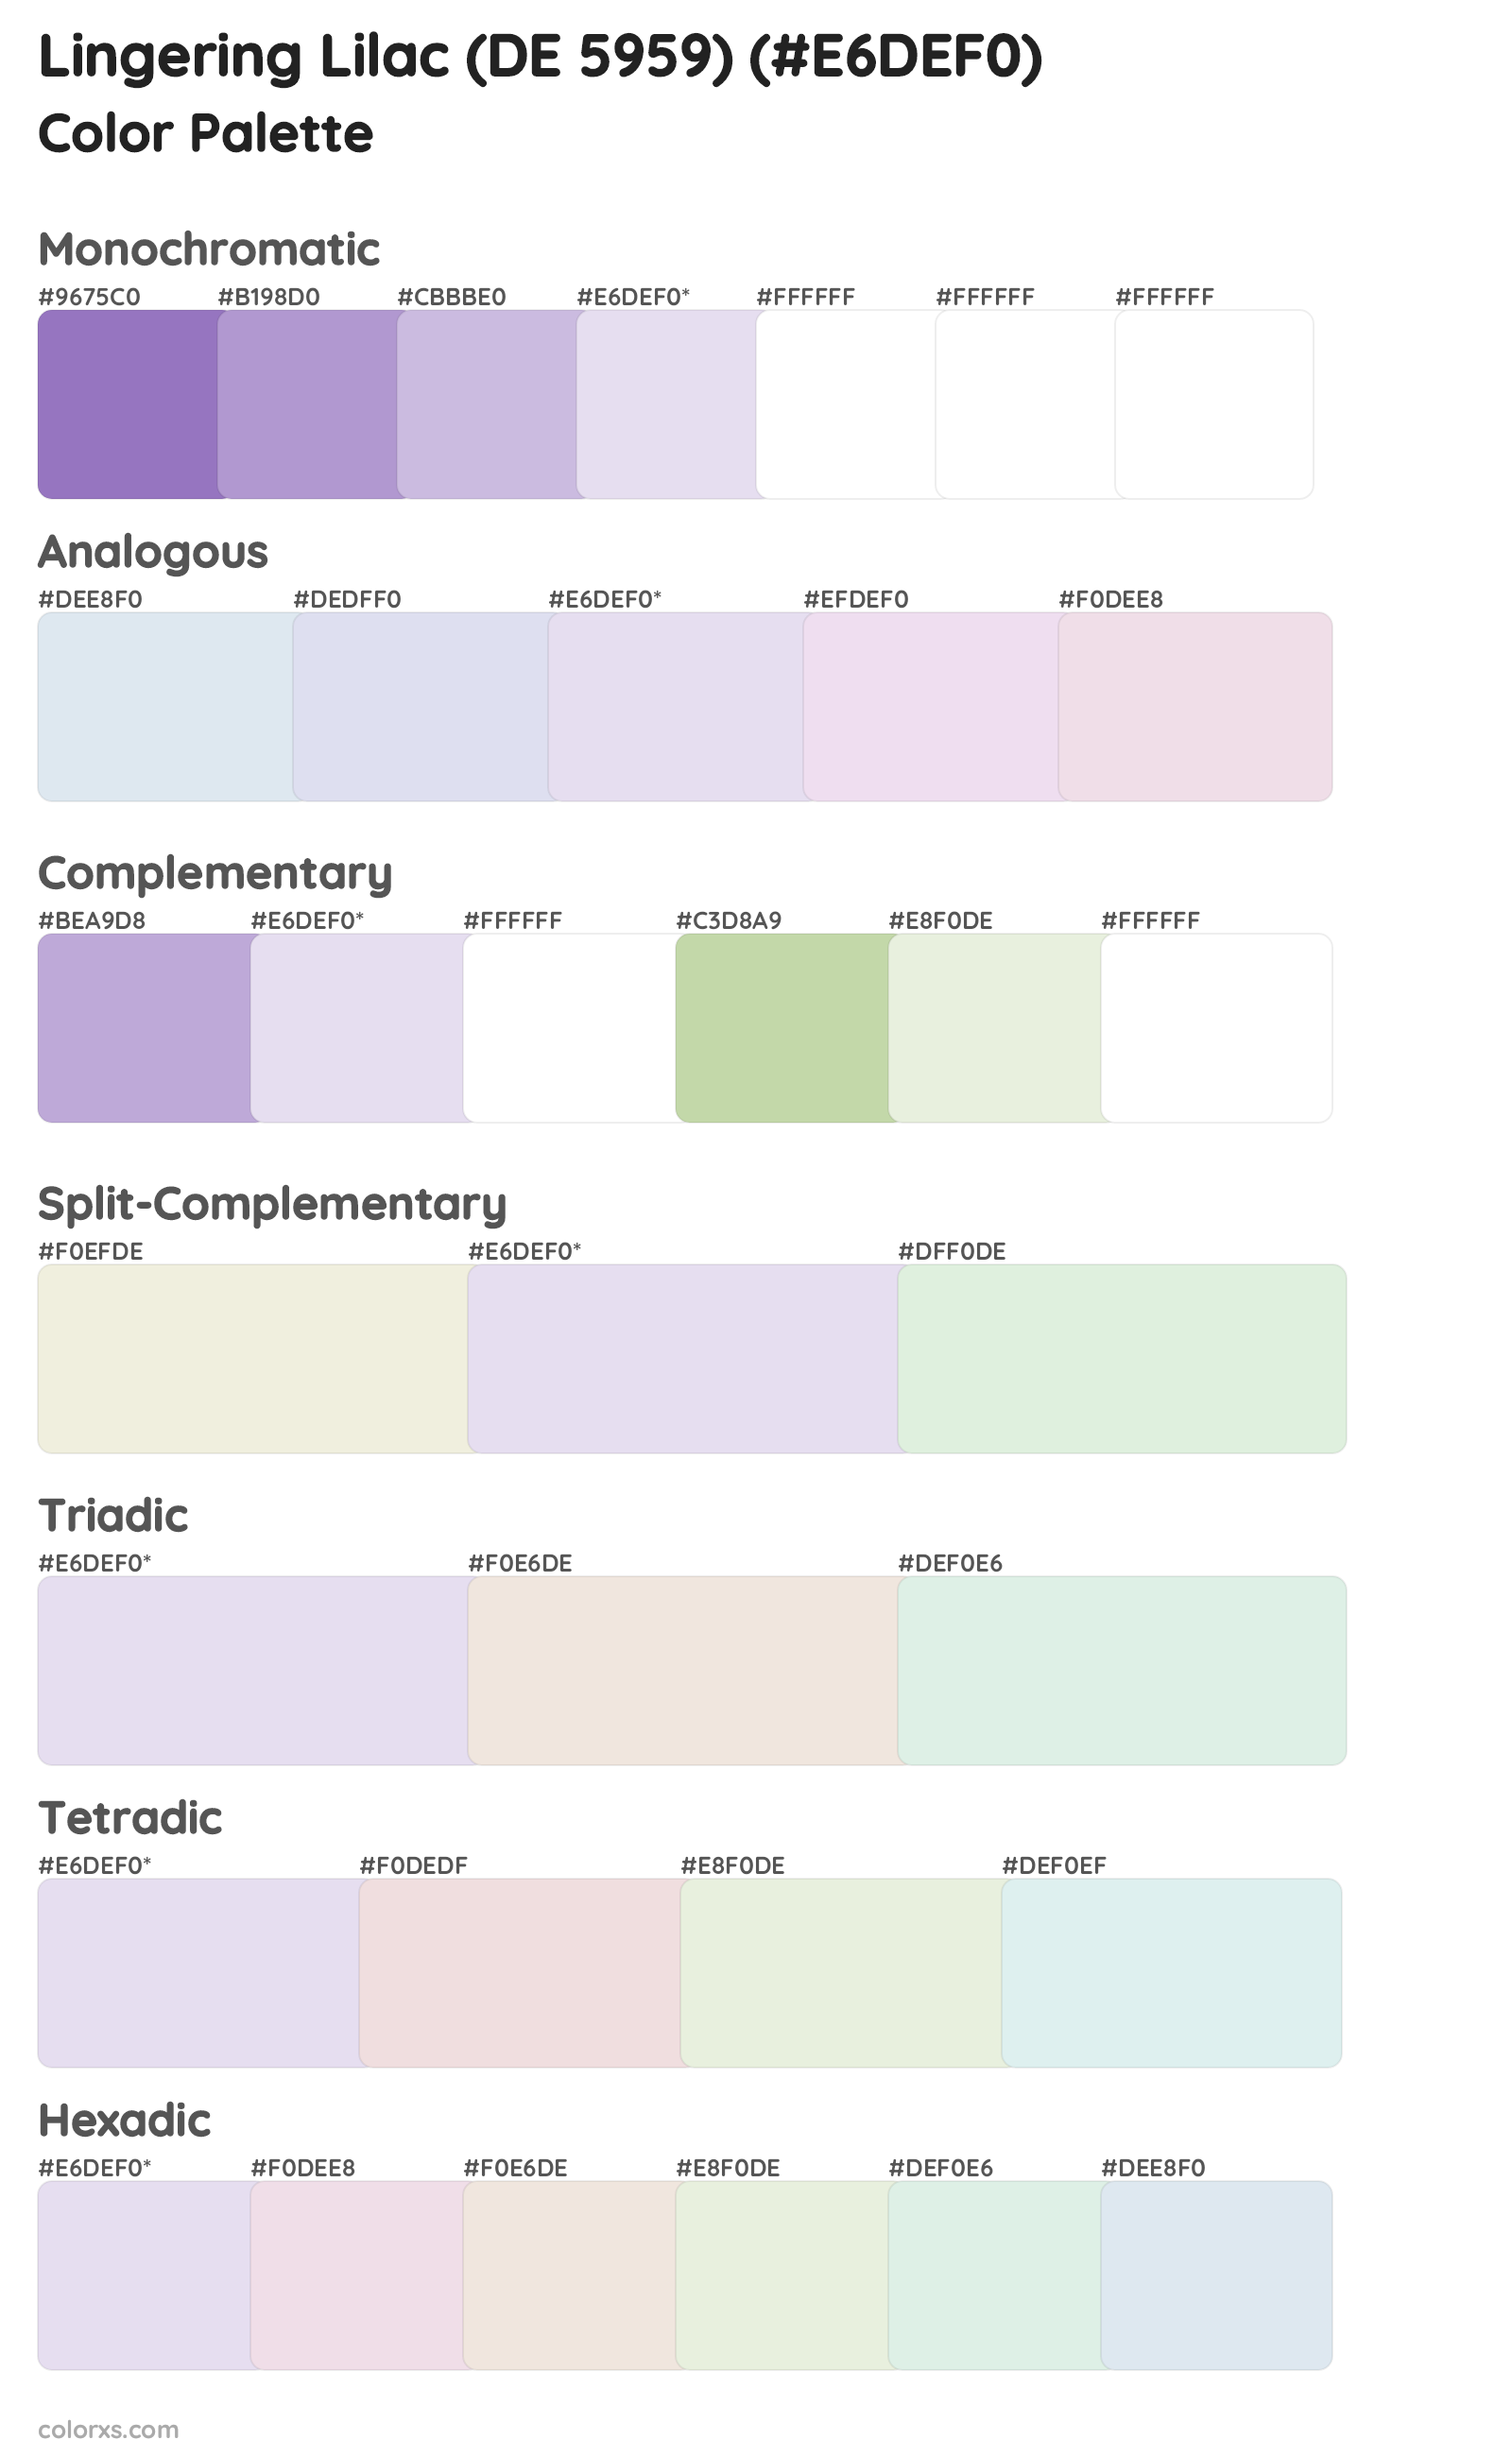 Lingering Lilac (DE 5959) Color Scheme Palettes